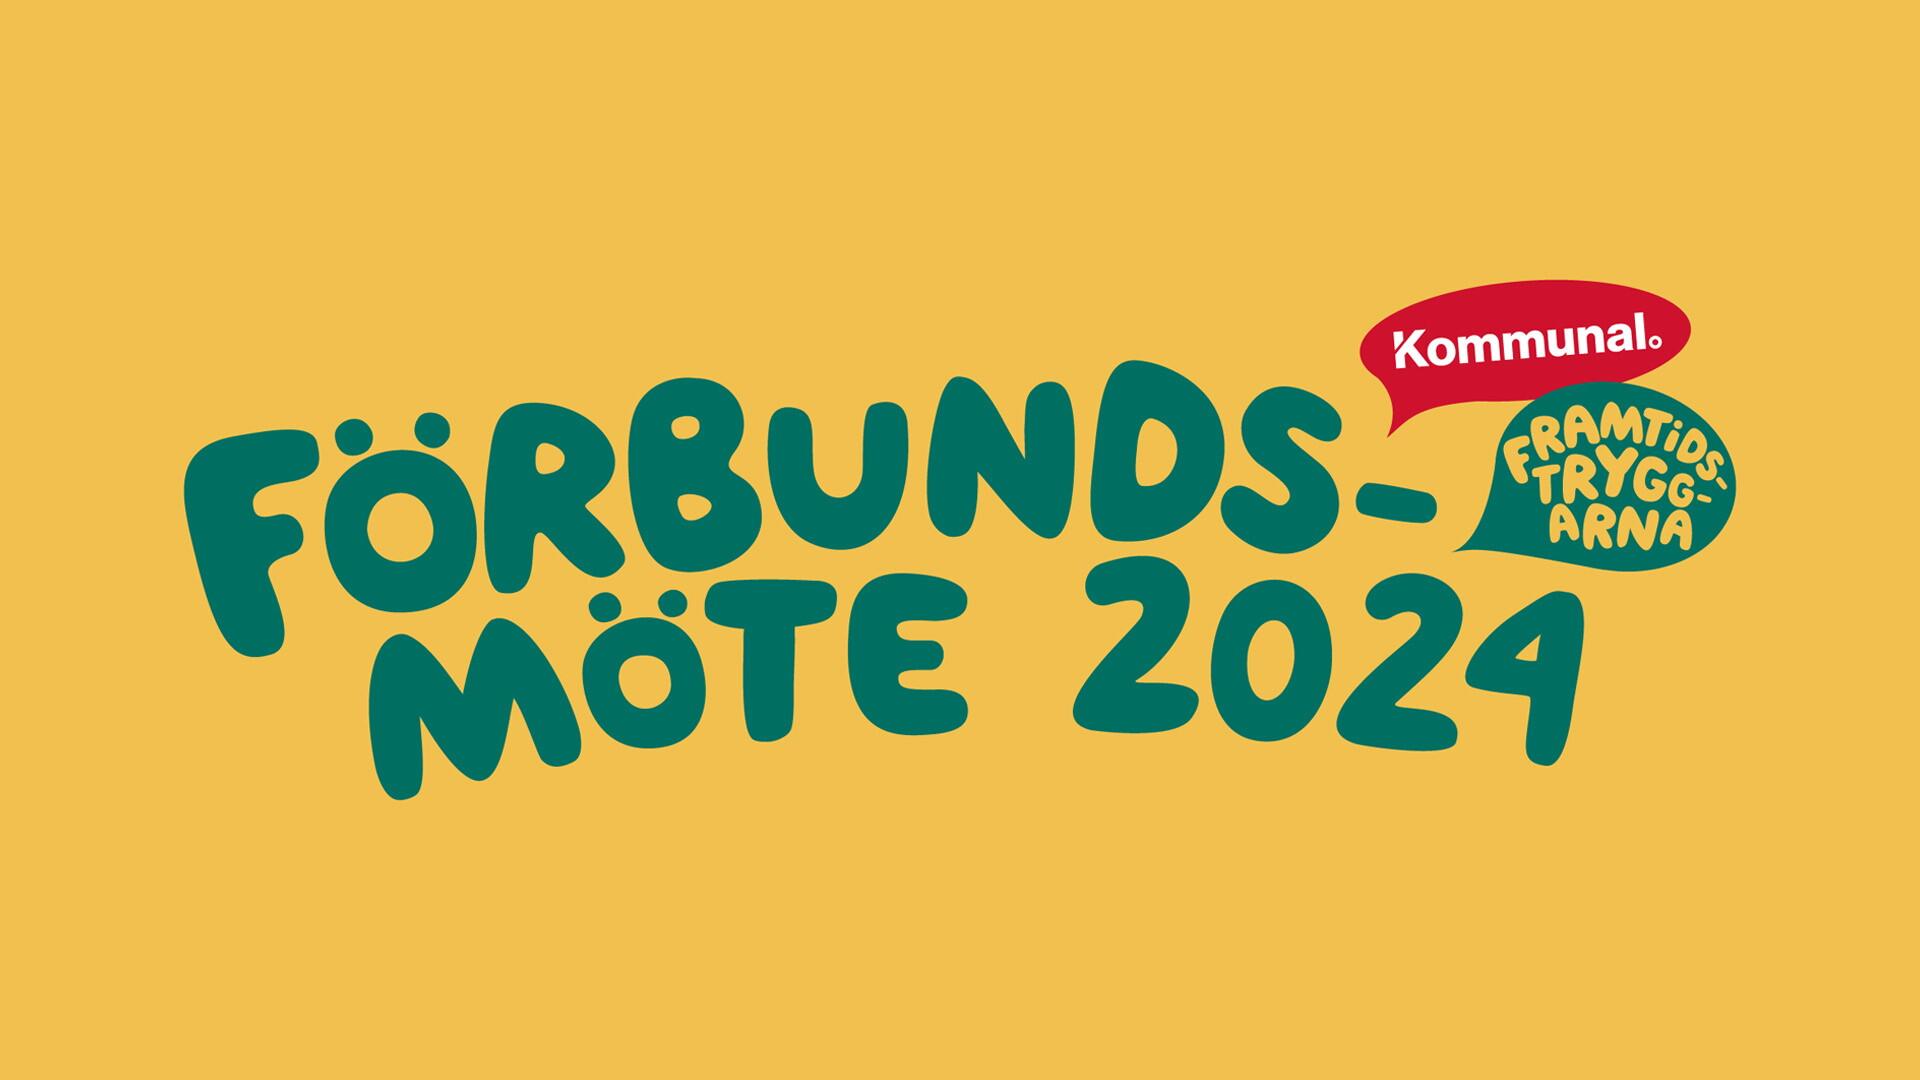 Texten "förbundsmöte 2024 - framtidstryggarna" i grön text mot gul bakgrund. I högra hörnet finns en röd Kommunal-logga.